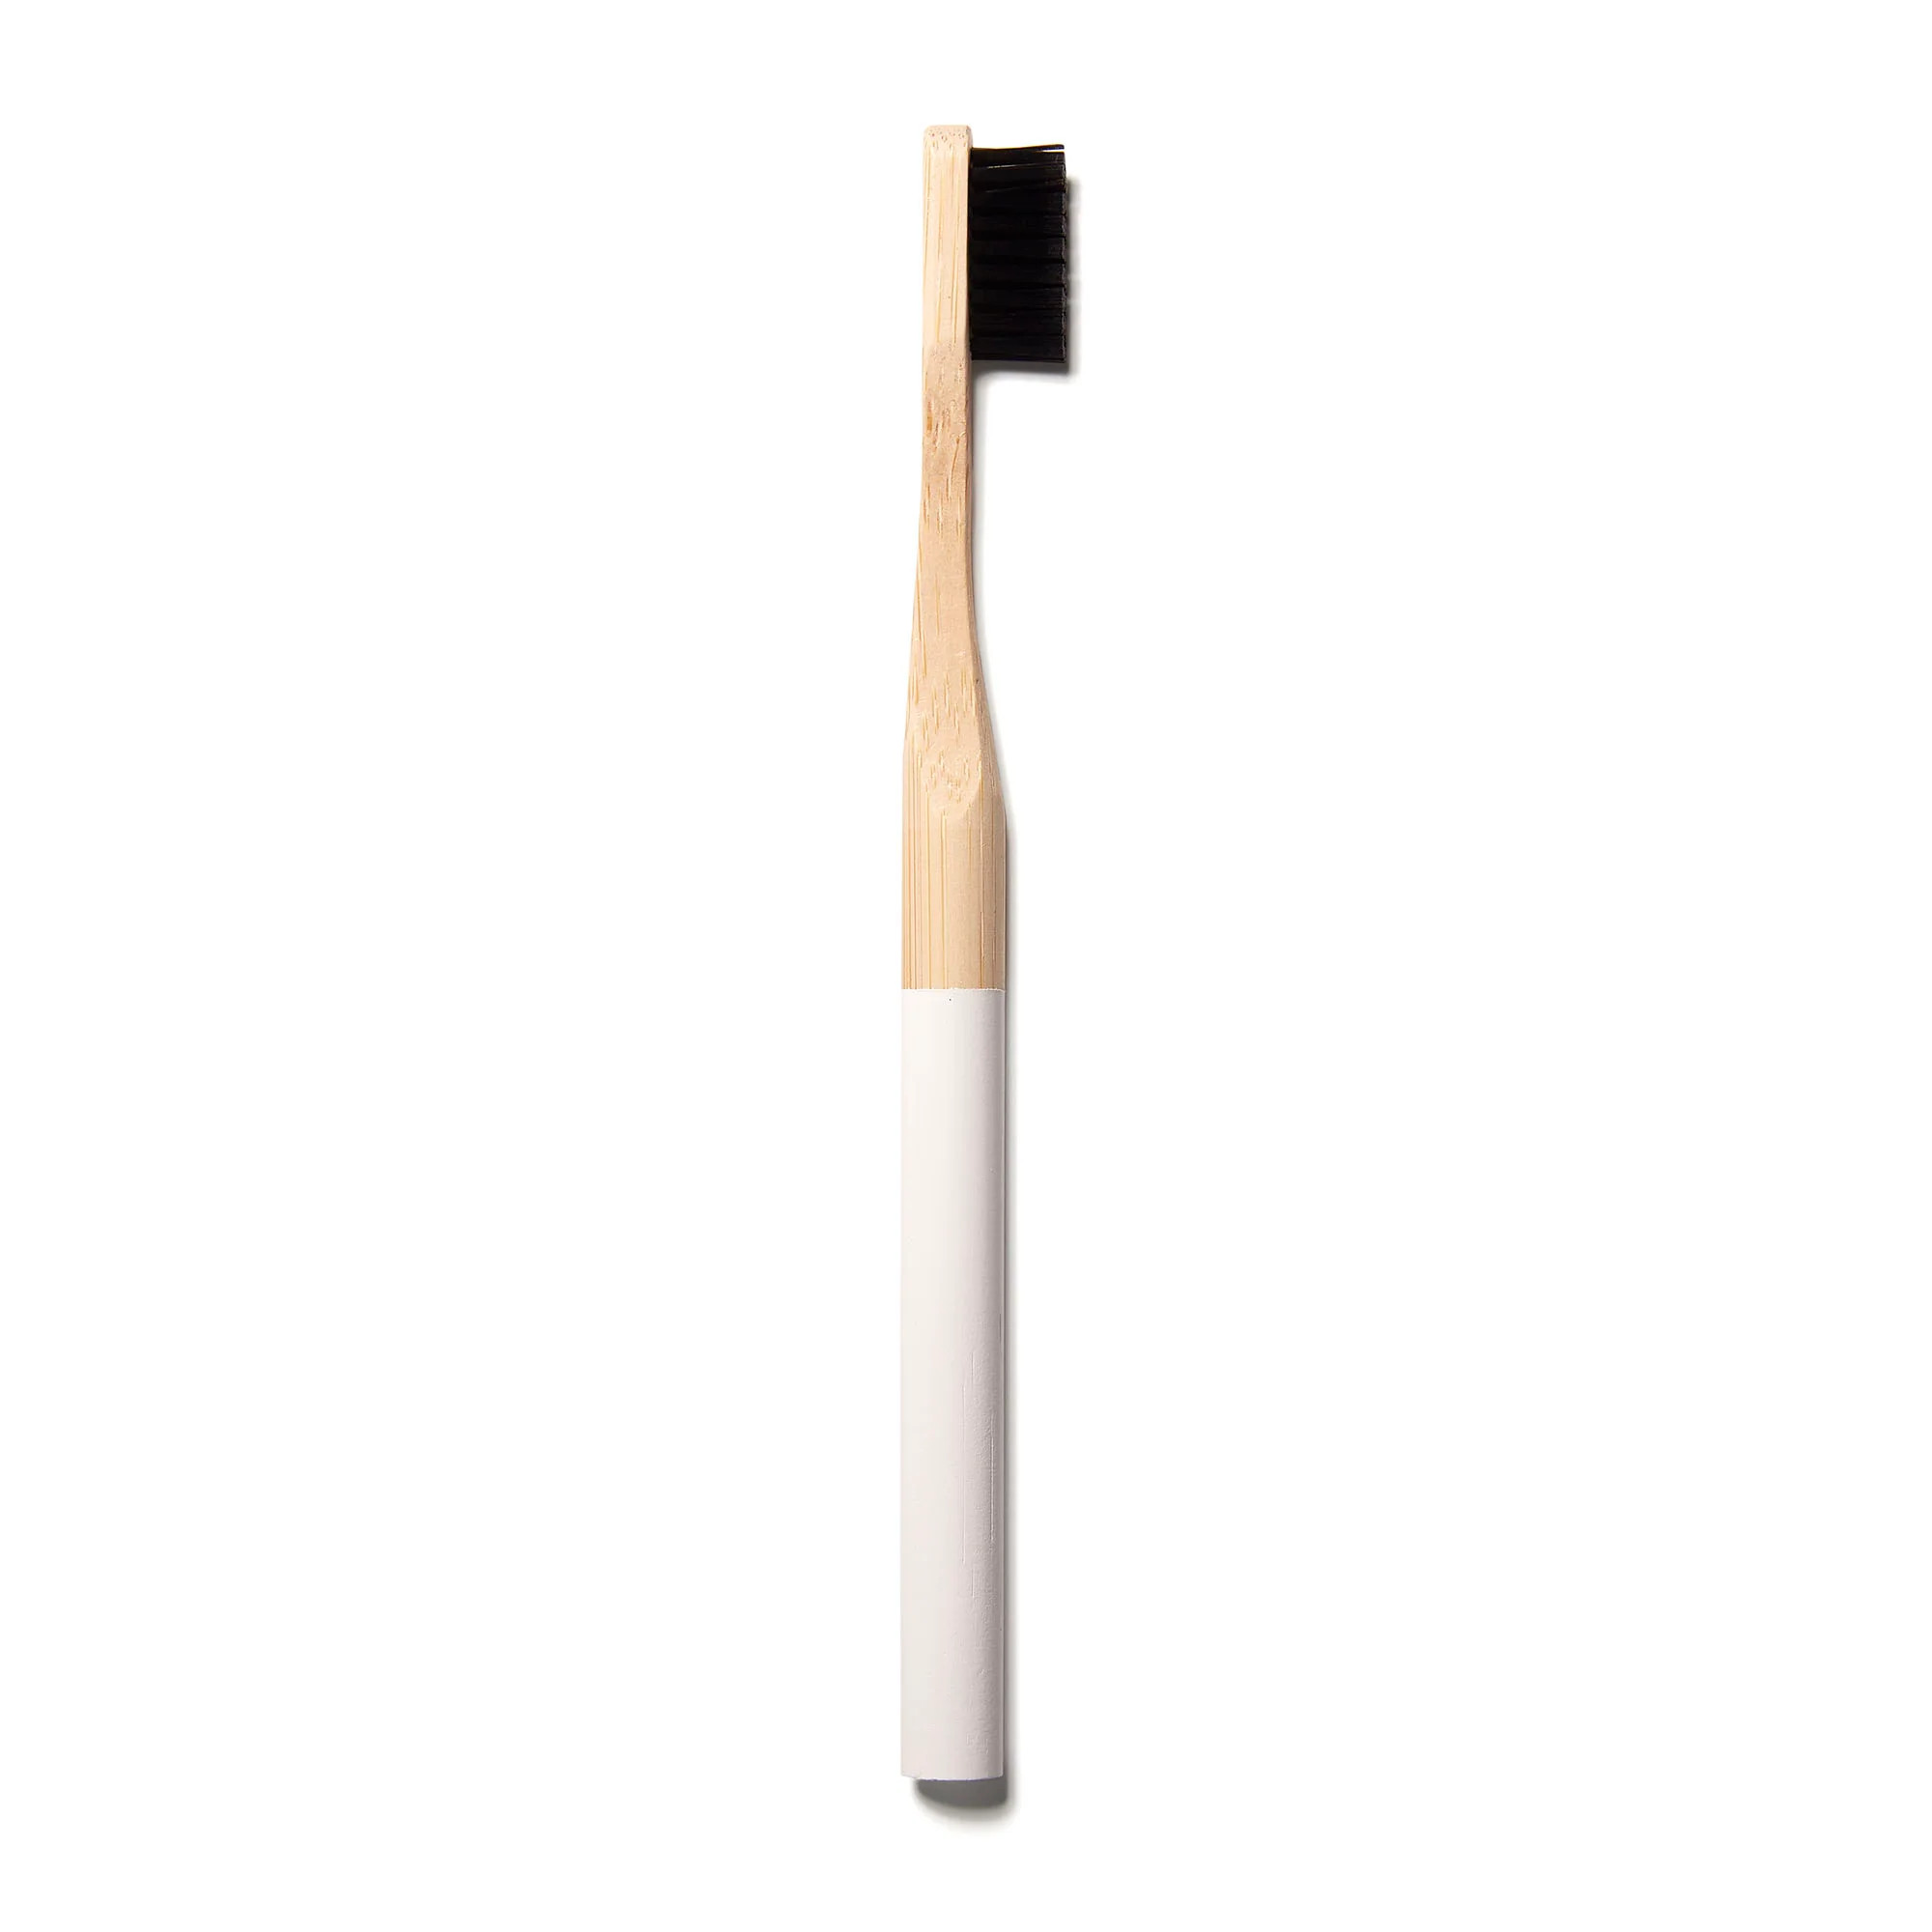 Brilliant Black Bamboo Toothbrush | Thirteen Lune